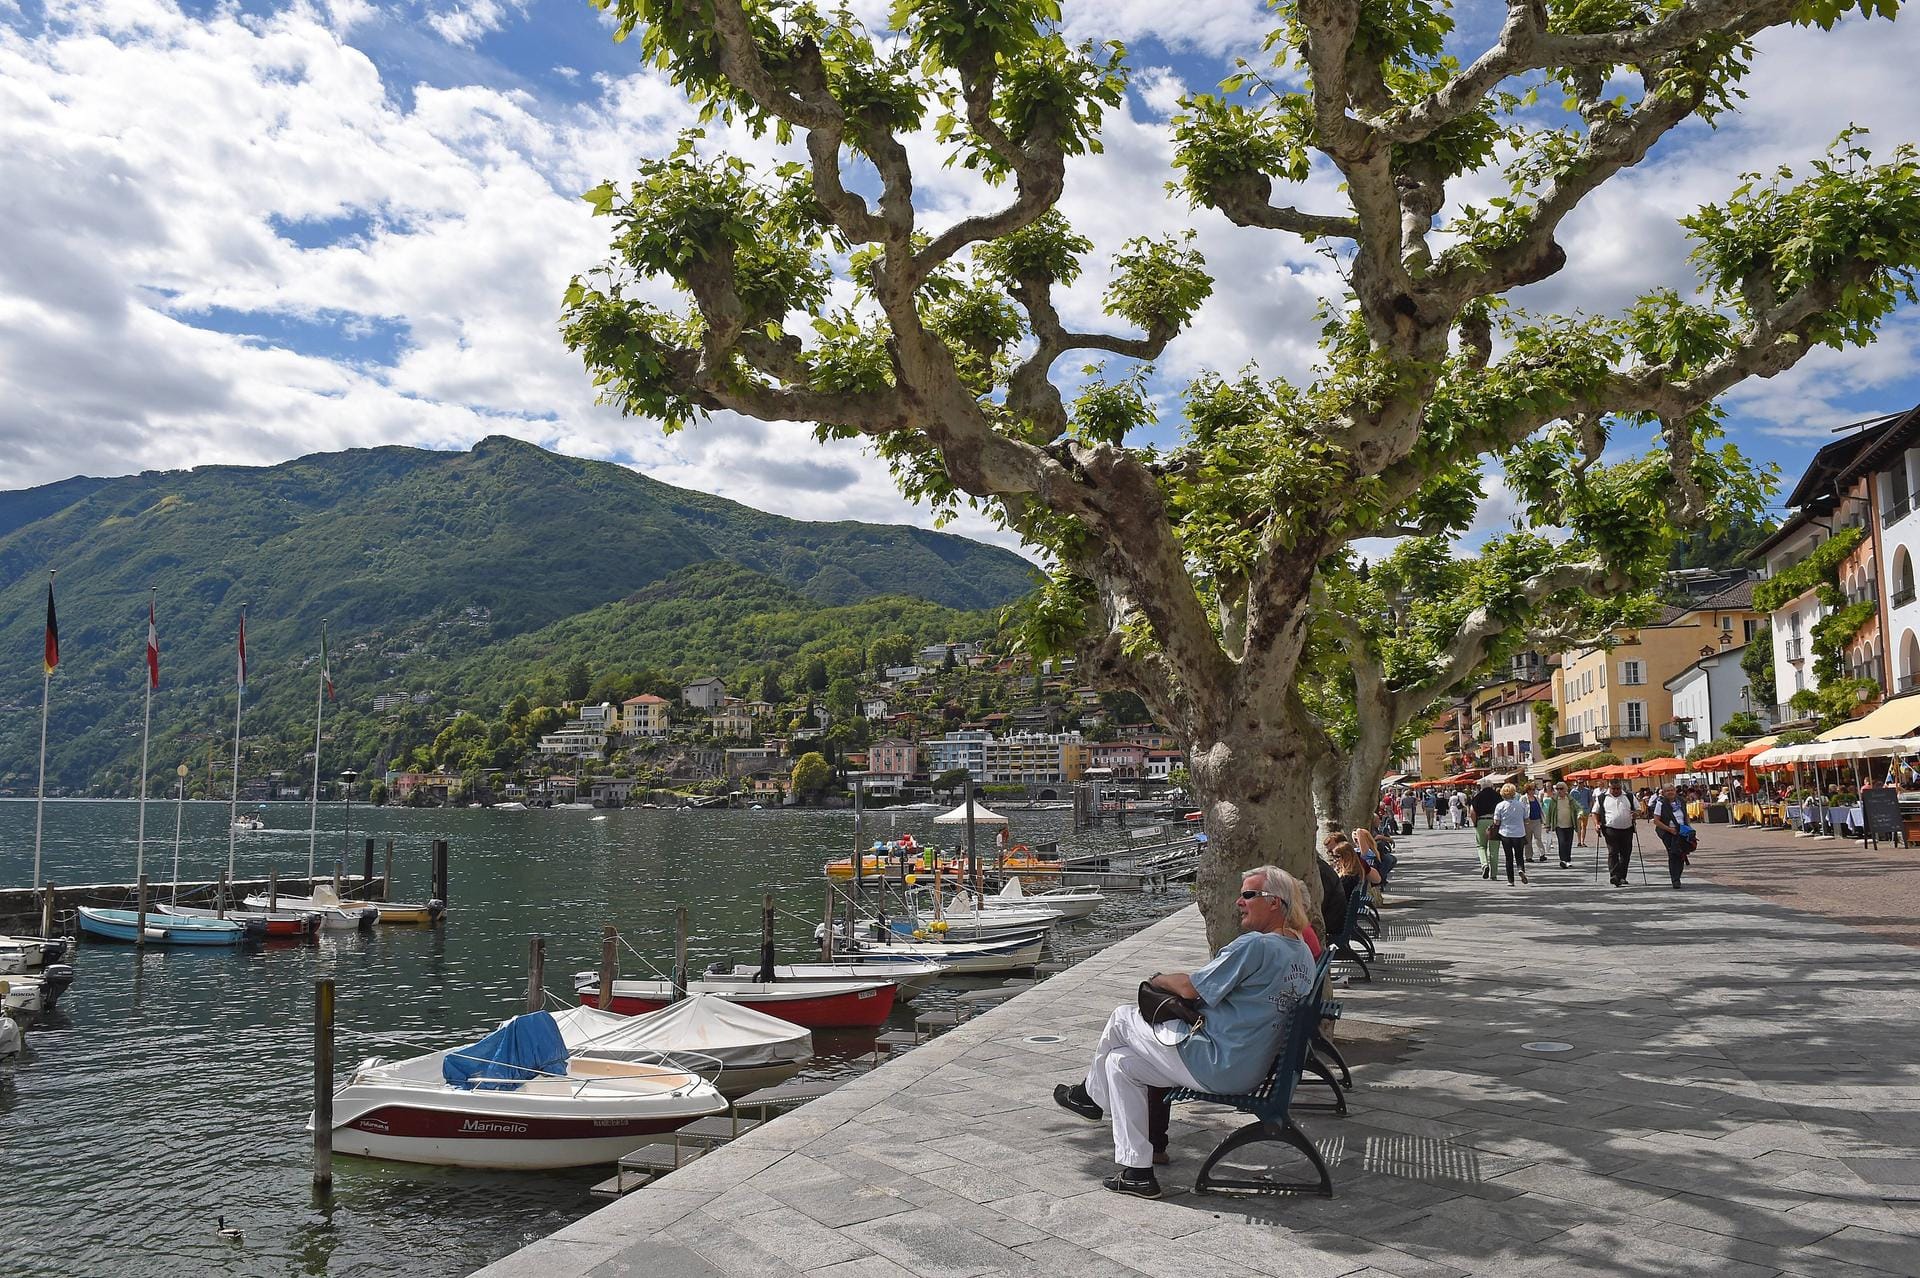 Spaziergang entlang der Seepromenade von Ascona. Menschen genießen das schöne sonnige Wetter am See.